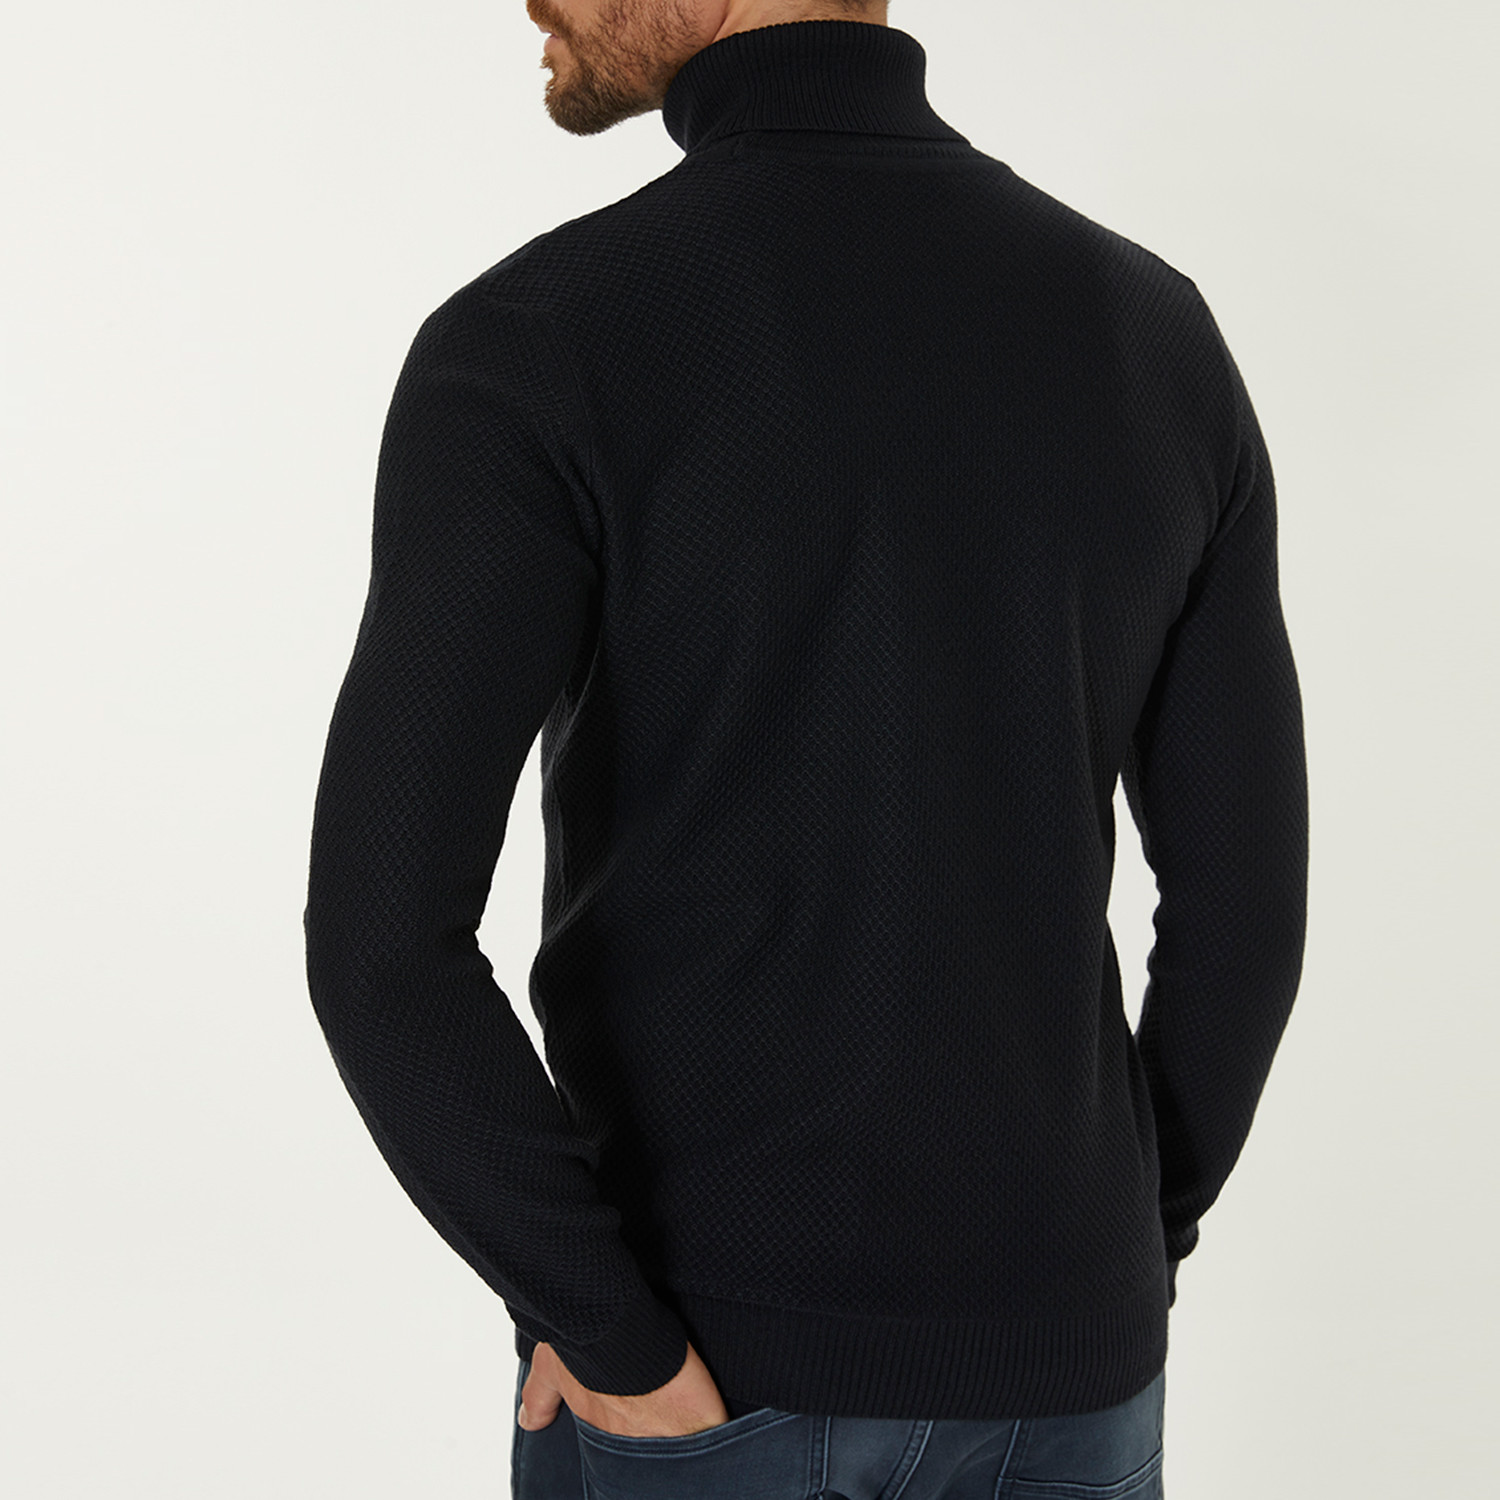 Wool Blend Textured Turtleneck Sweater // Navy Blue (XS) - AVVA - Touch ...